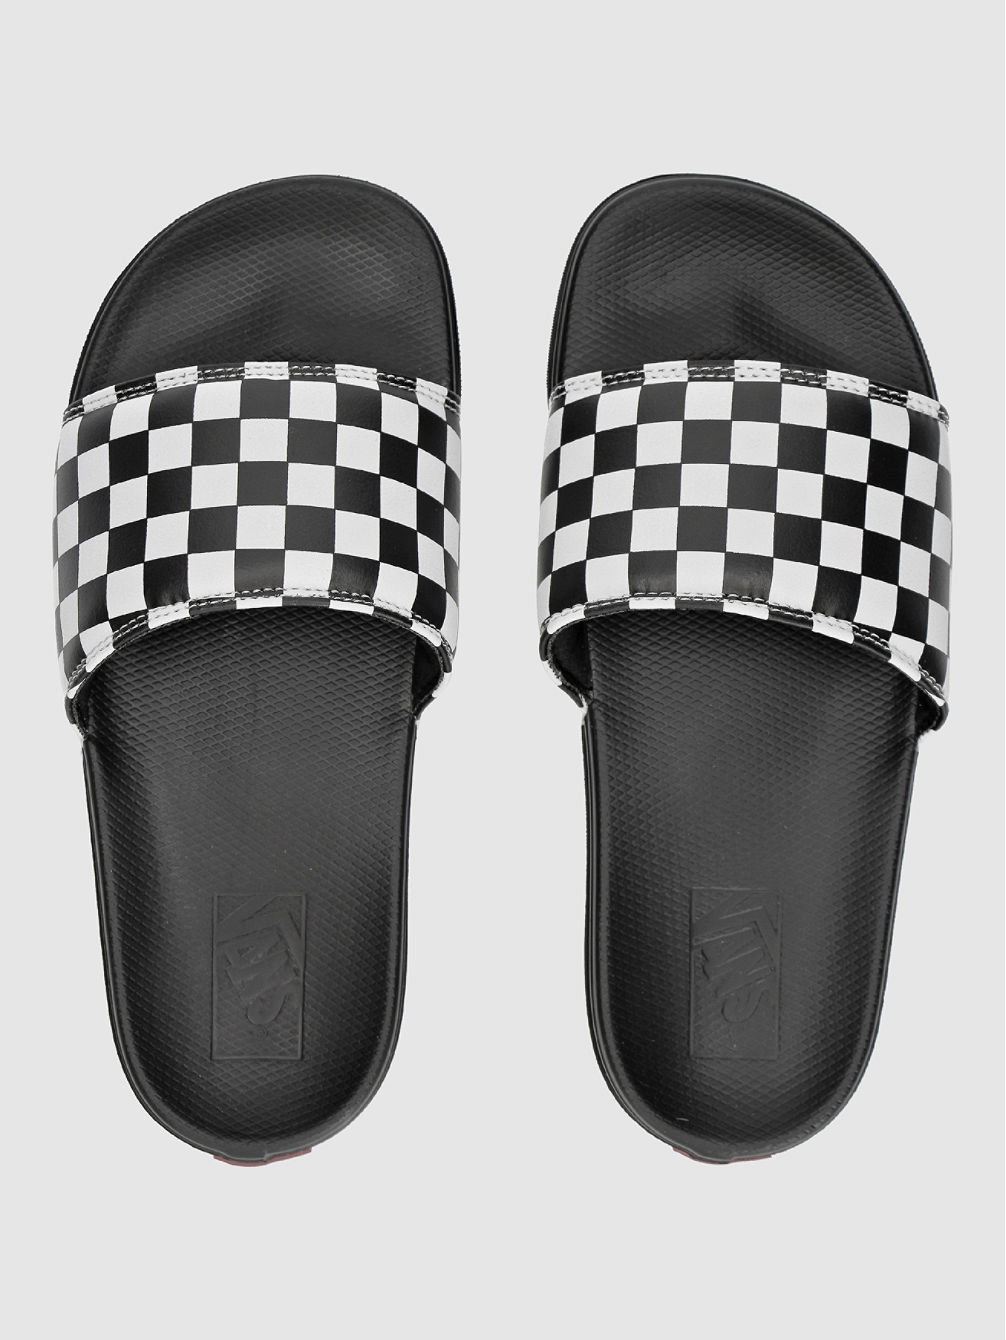 Checkerboard La Costa Slide-On Sandals